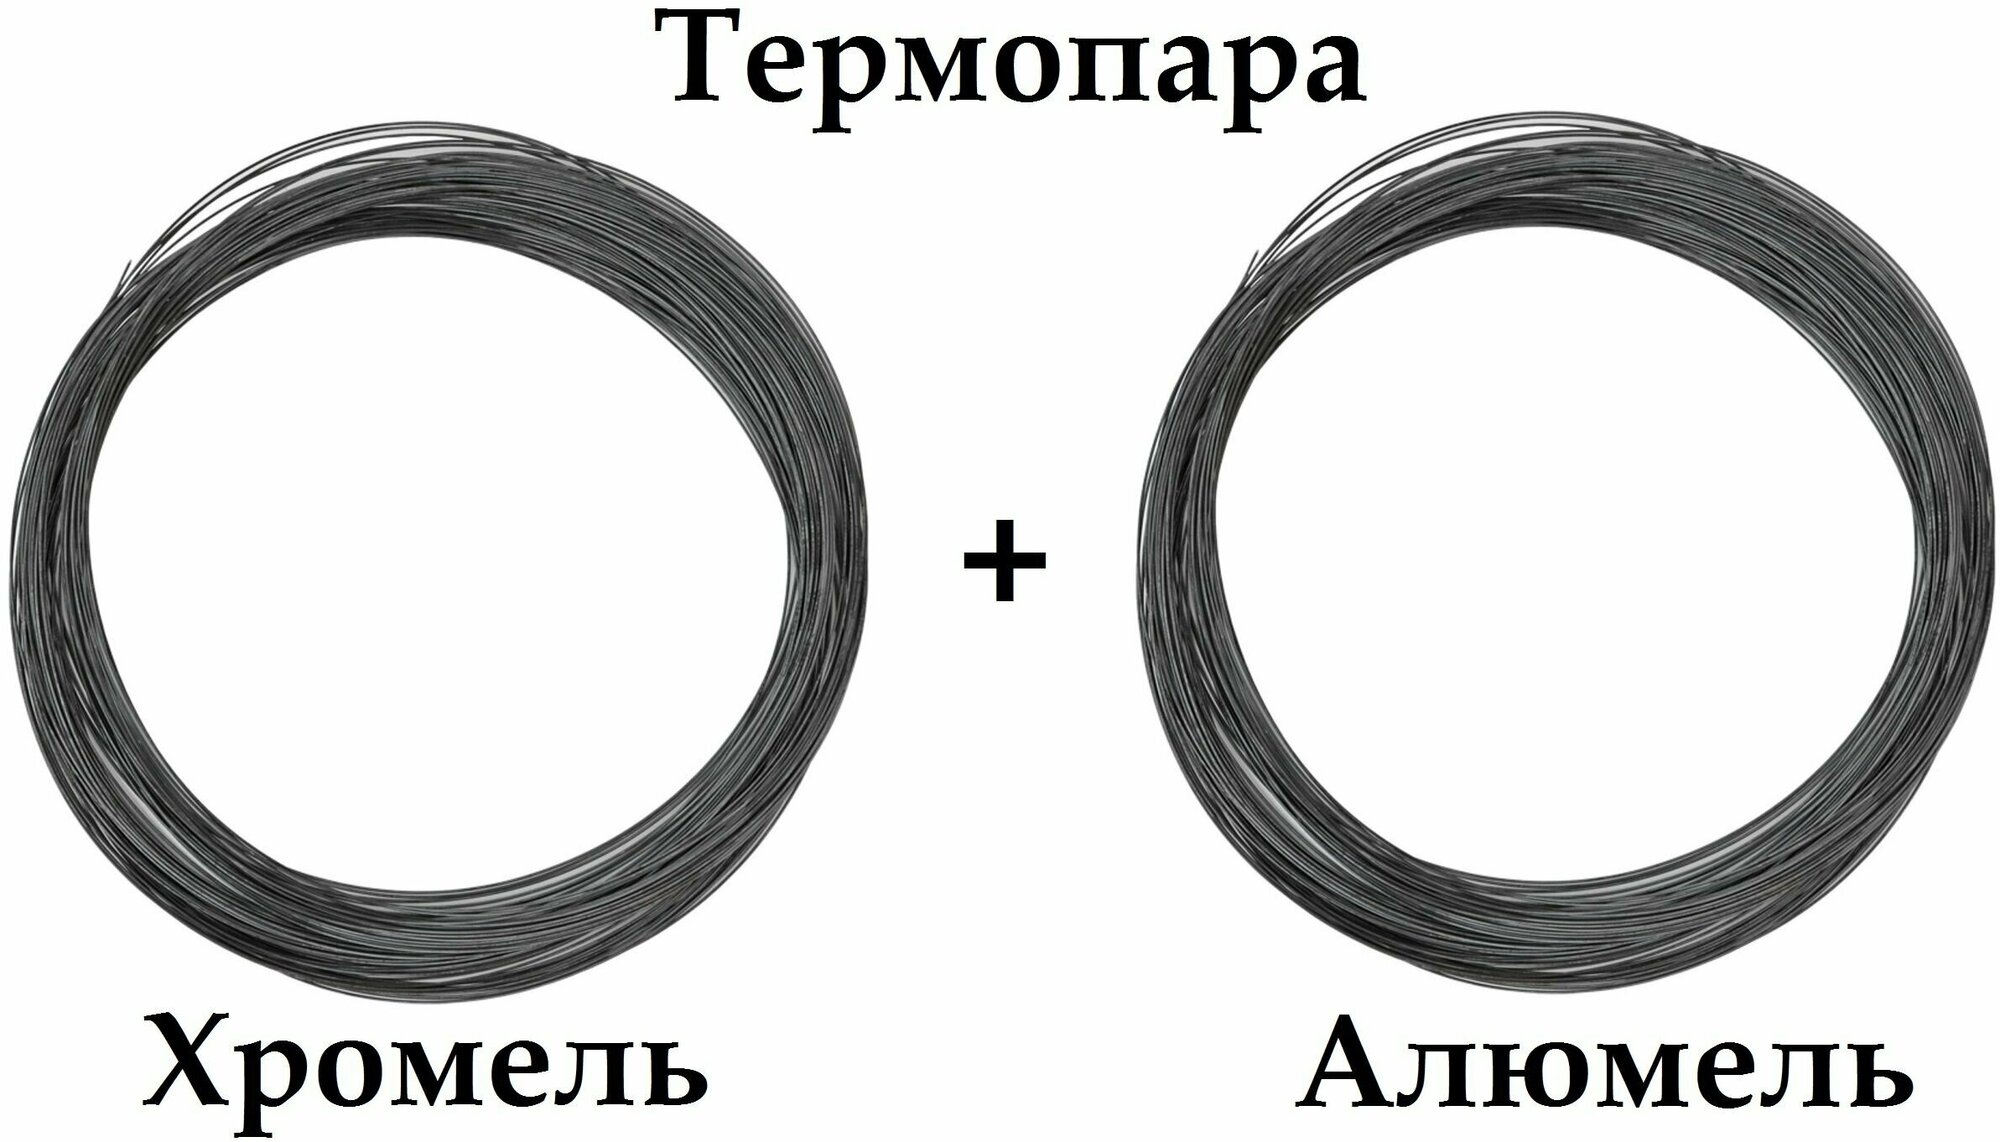 Термопара Хромель НХ95 + Алюмель нмцак 2-2-1 диаметр 12 мм -1+1 м. итого 2 метра для производства Термоэлектродов реостатов.